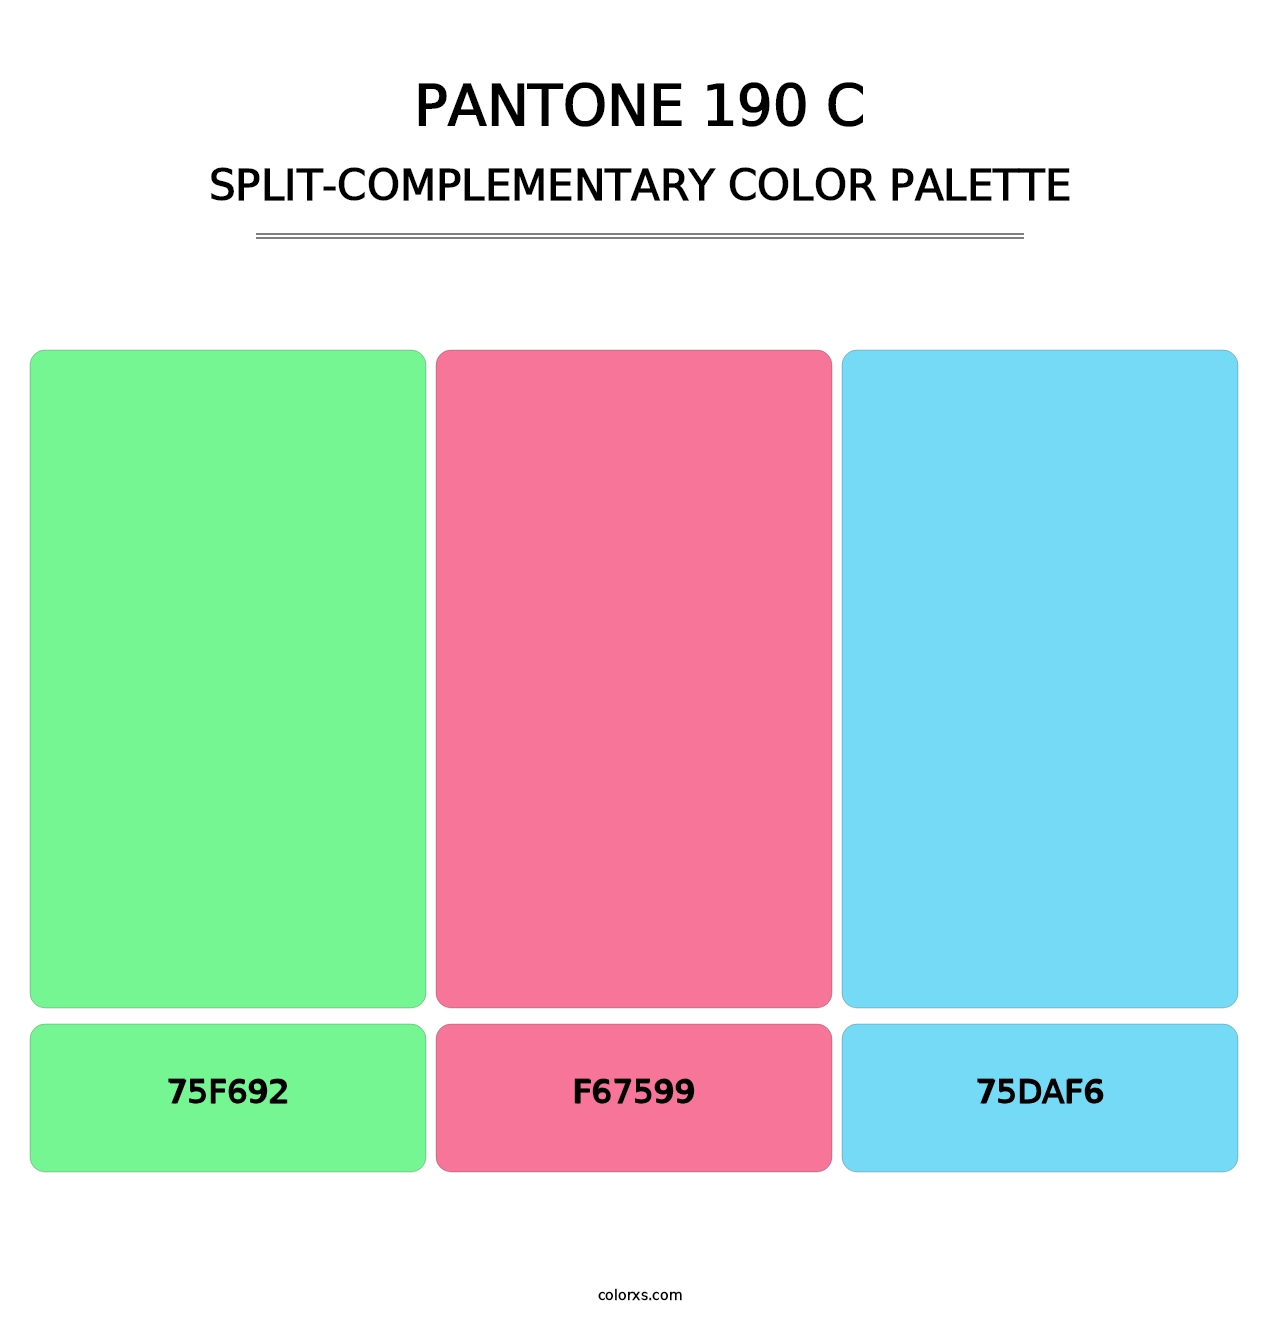 PANTONE 190 C - Split-Complementary Color Palette